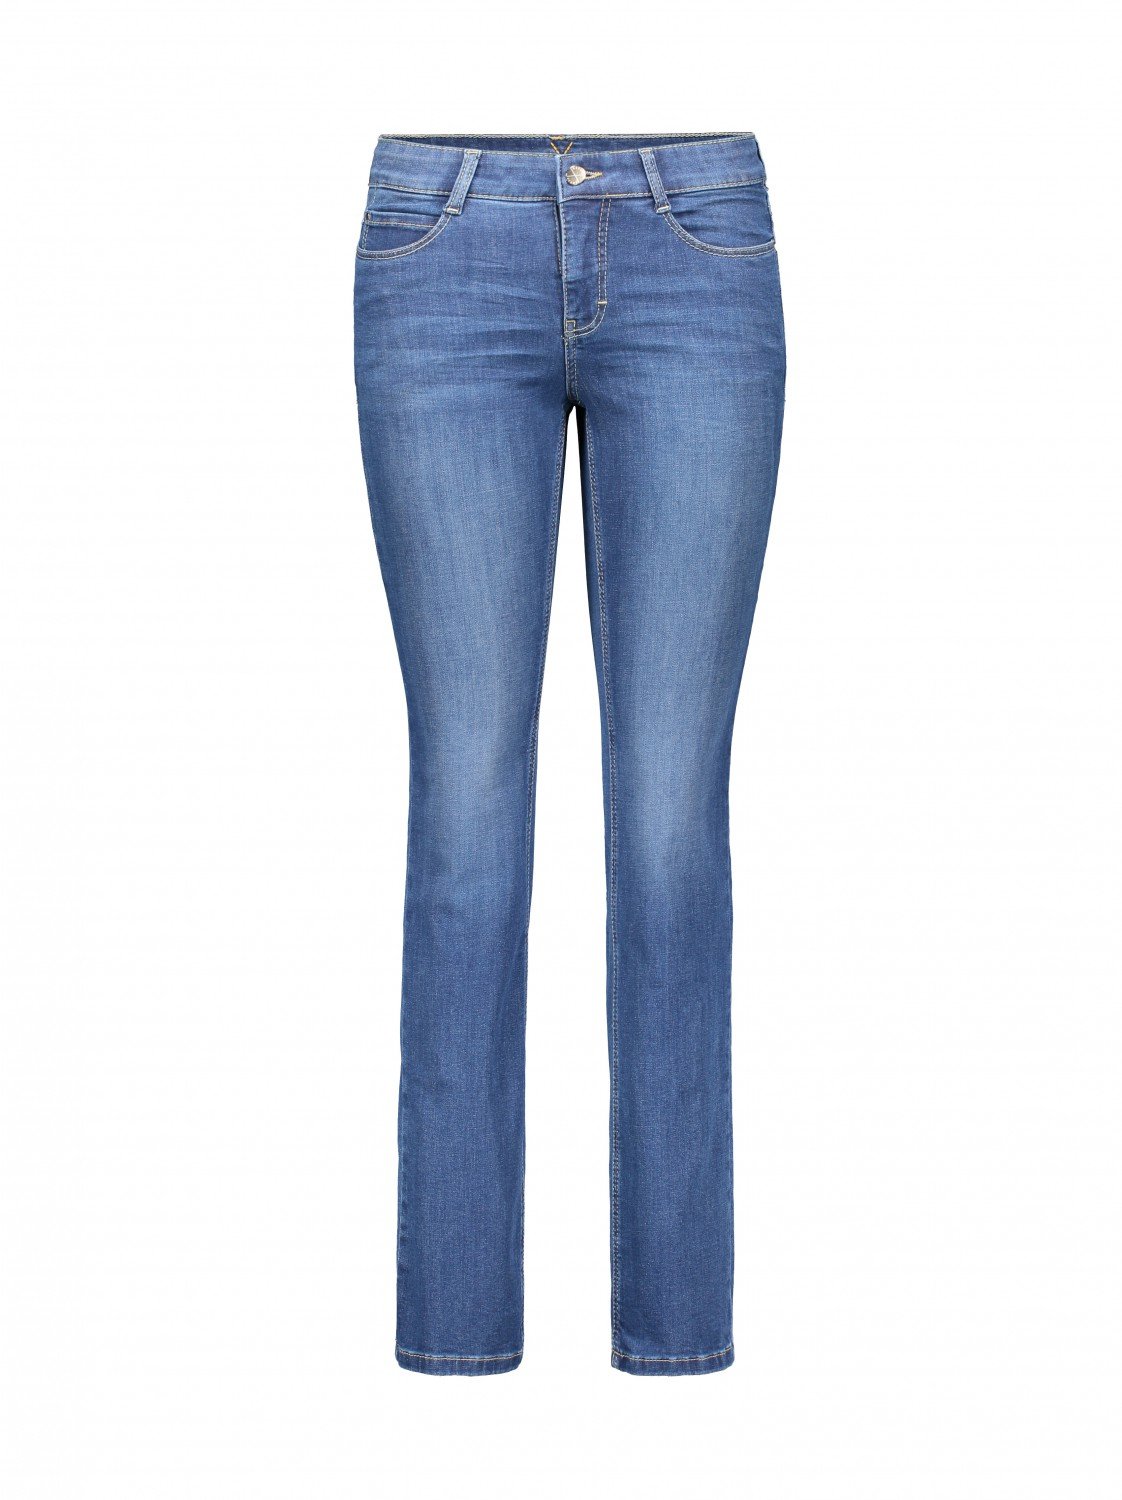 MAC JEANS Damen Dream Jeans, D569 (mid Blue Authentic wash) 46w / 34l